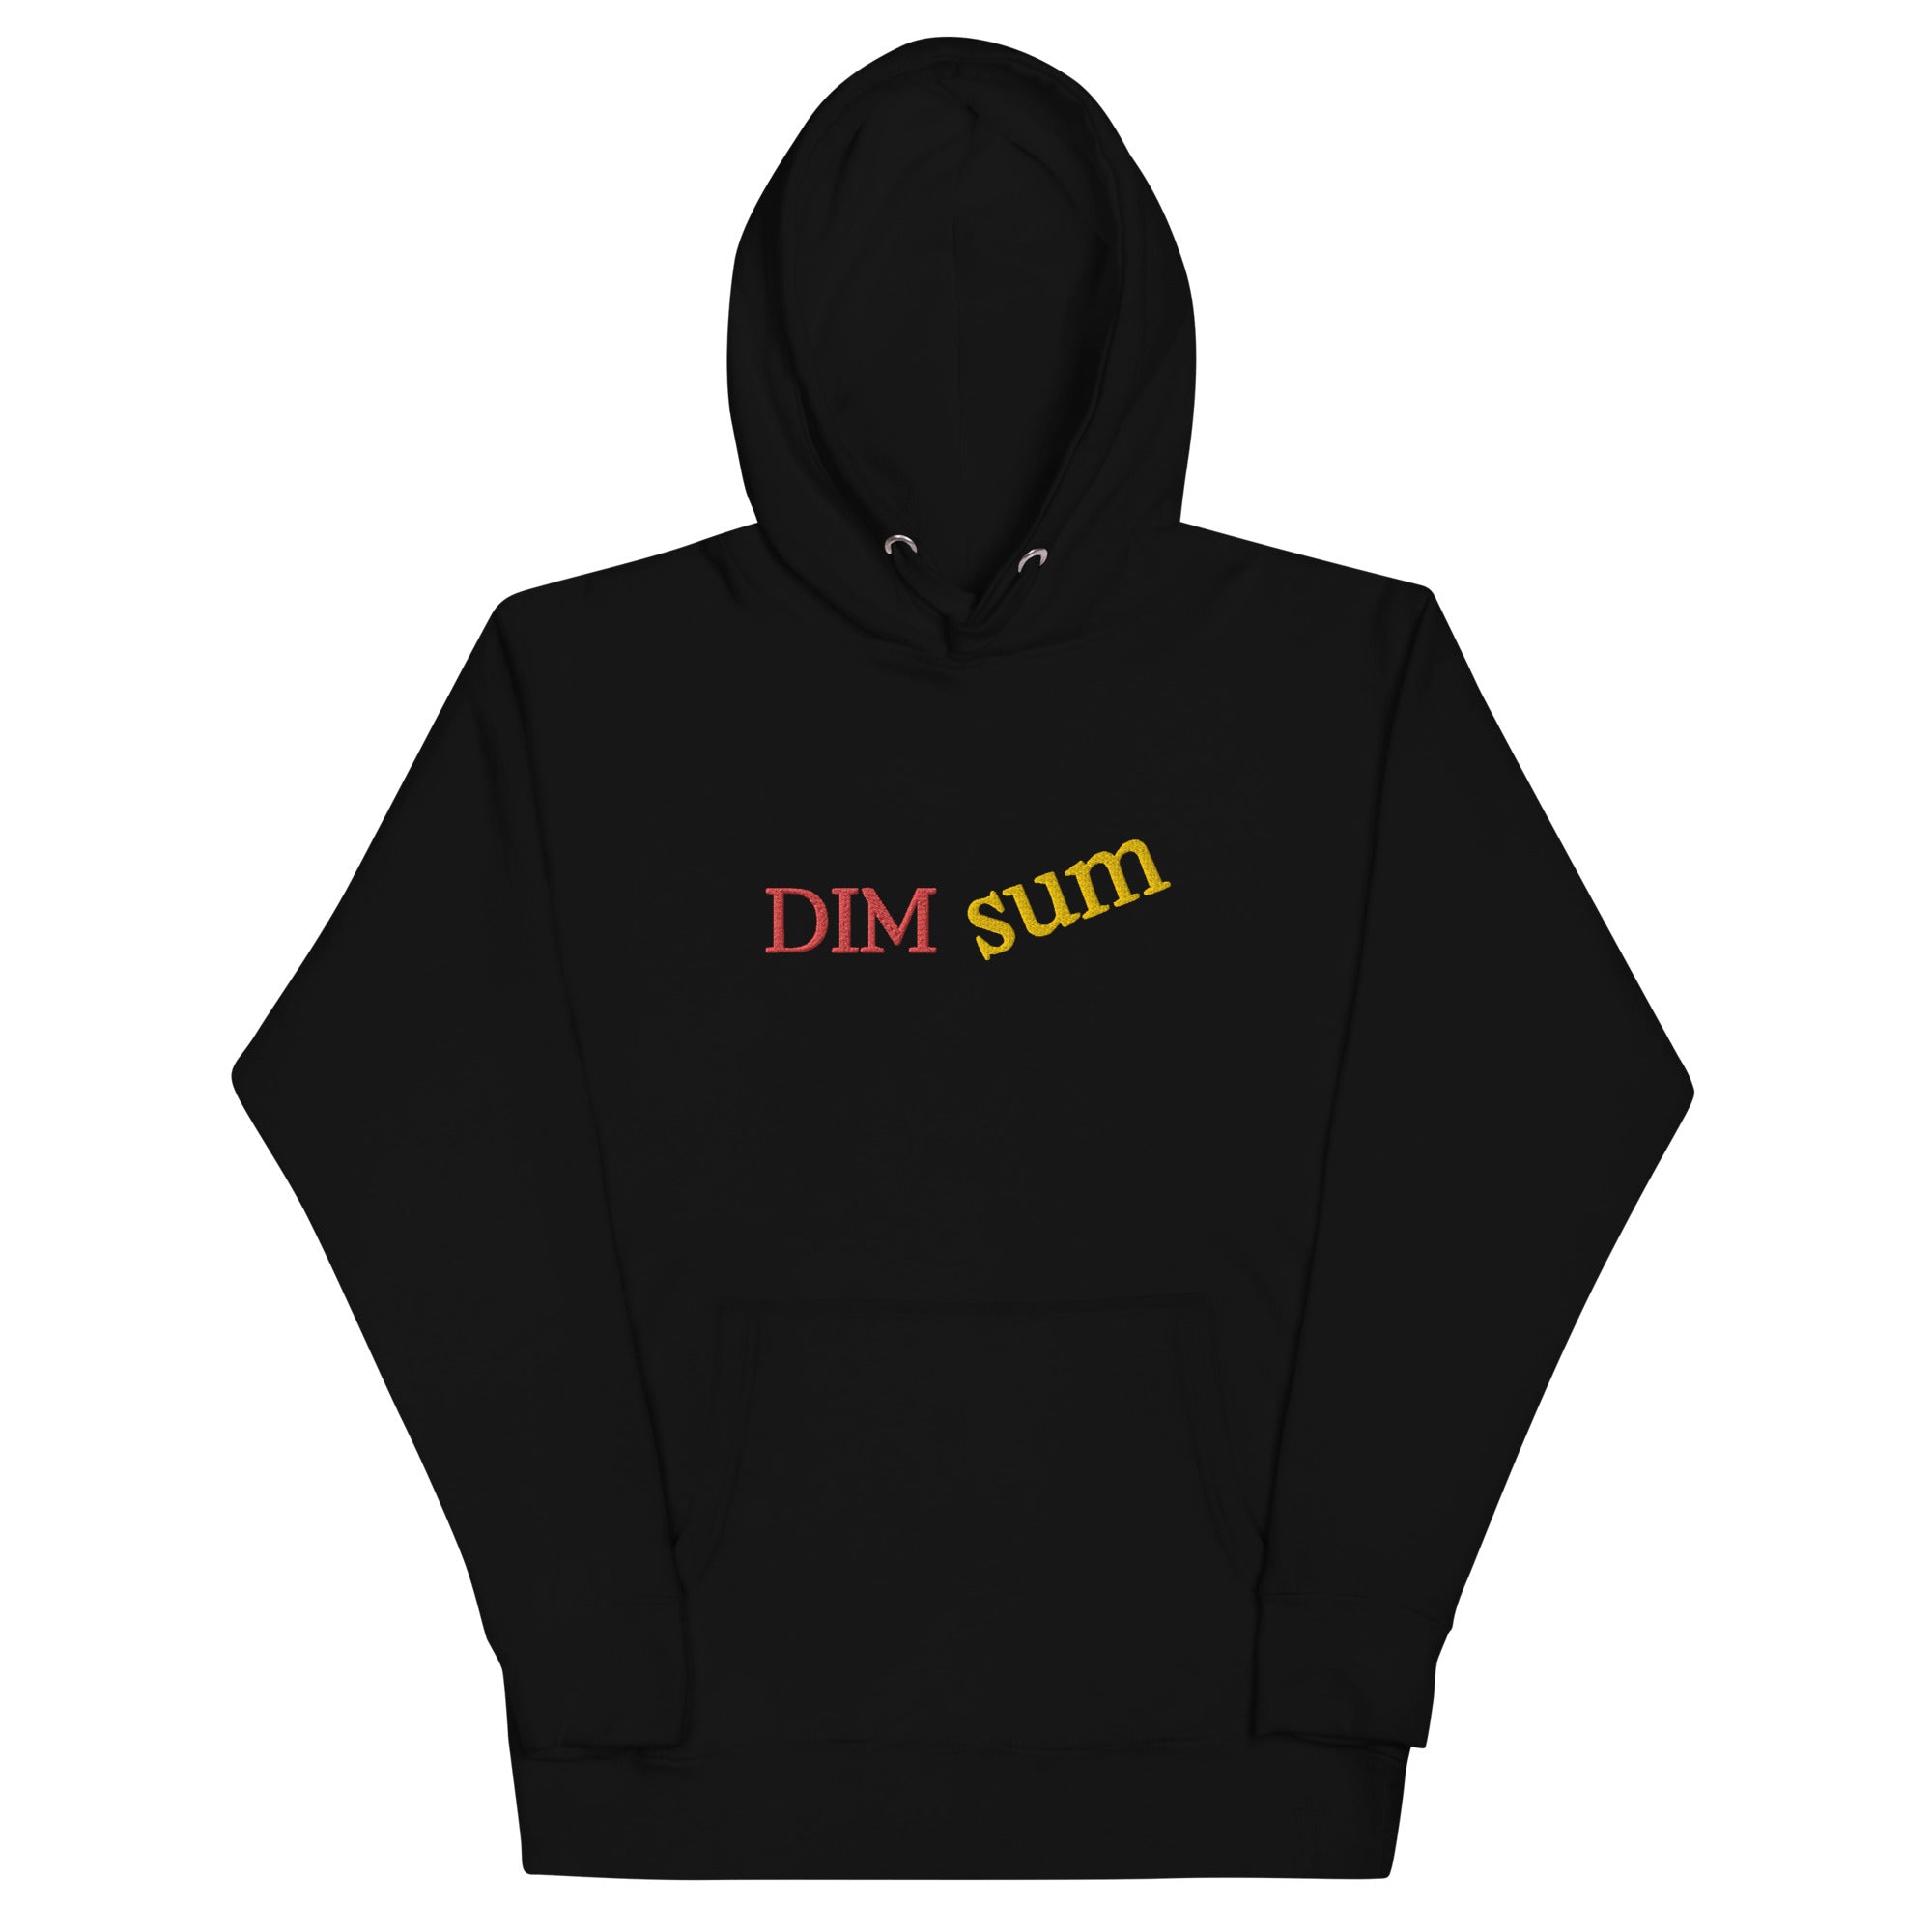 Unisex "Dim Sum" Premium Stitched Hoodie - THE CORNBREAD KITCHEN SHOP